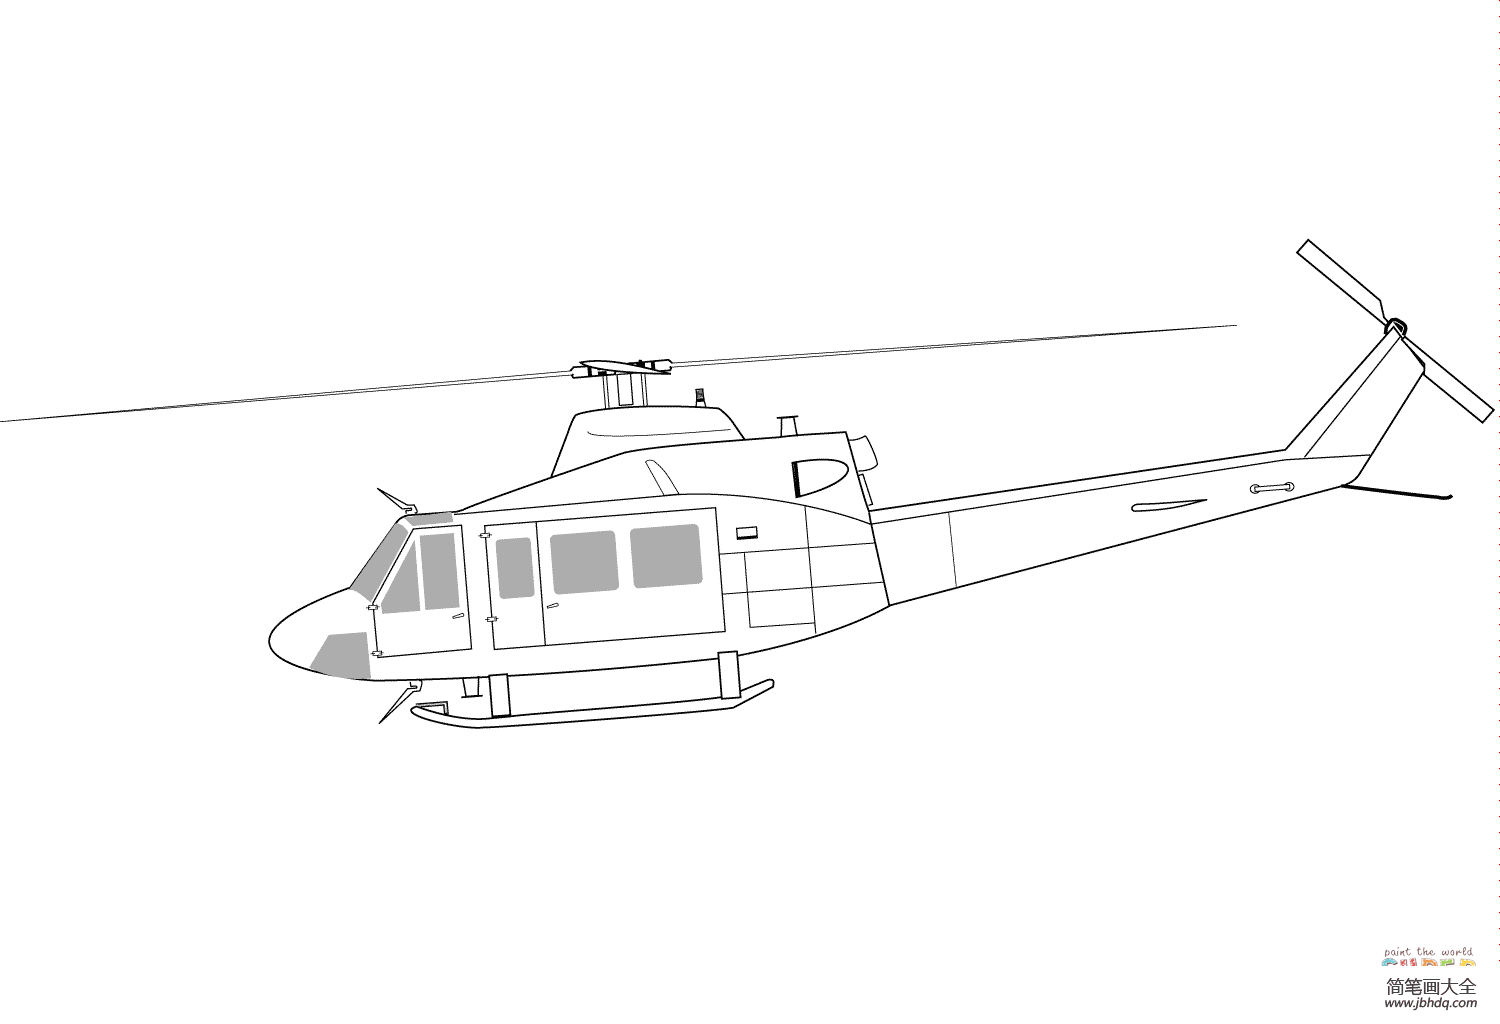 如何画直升机